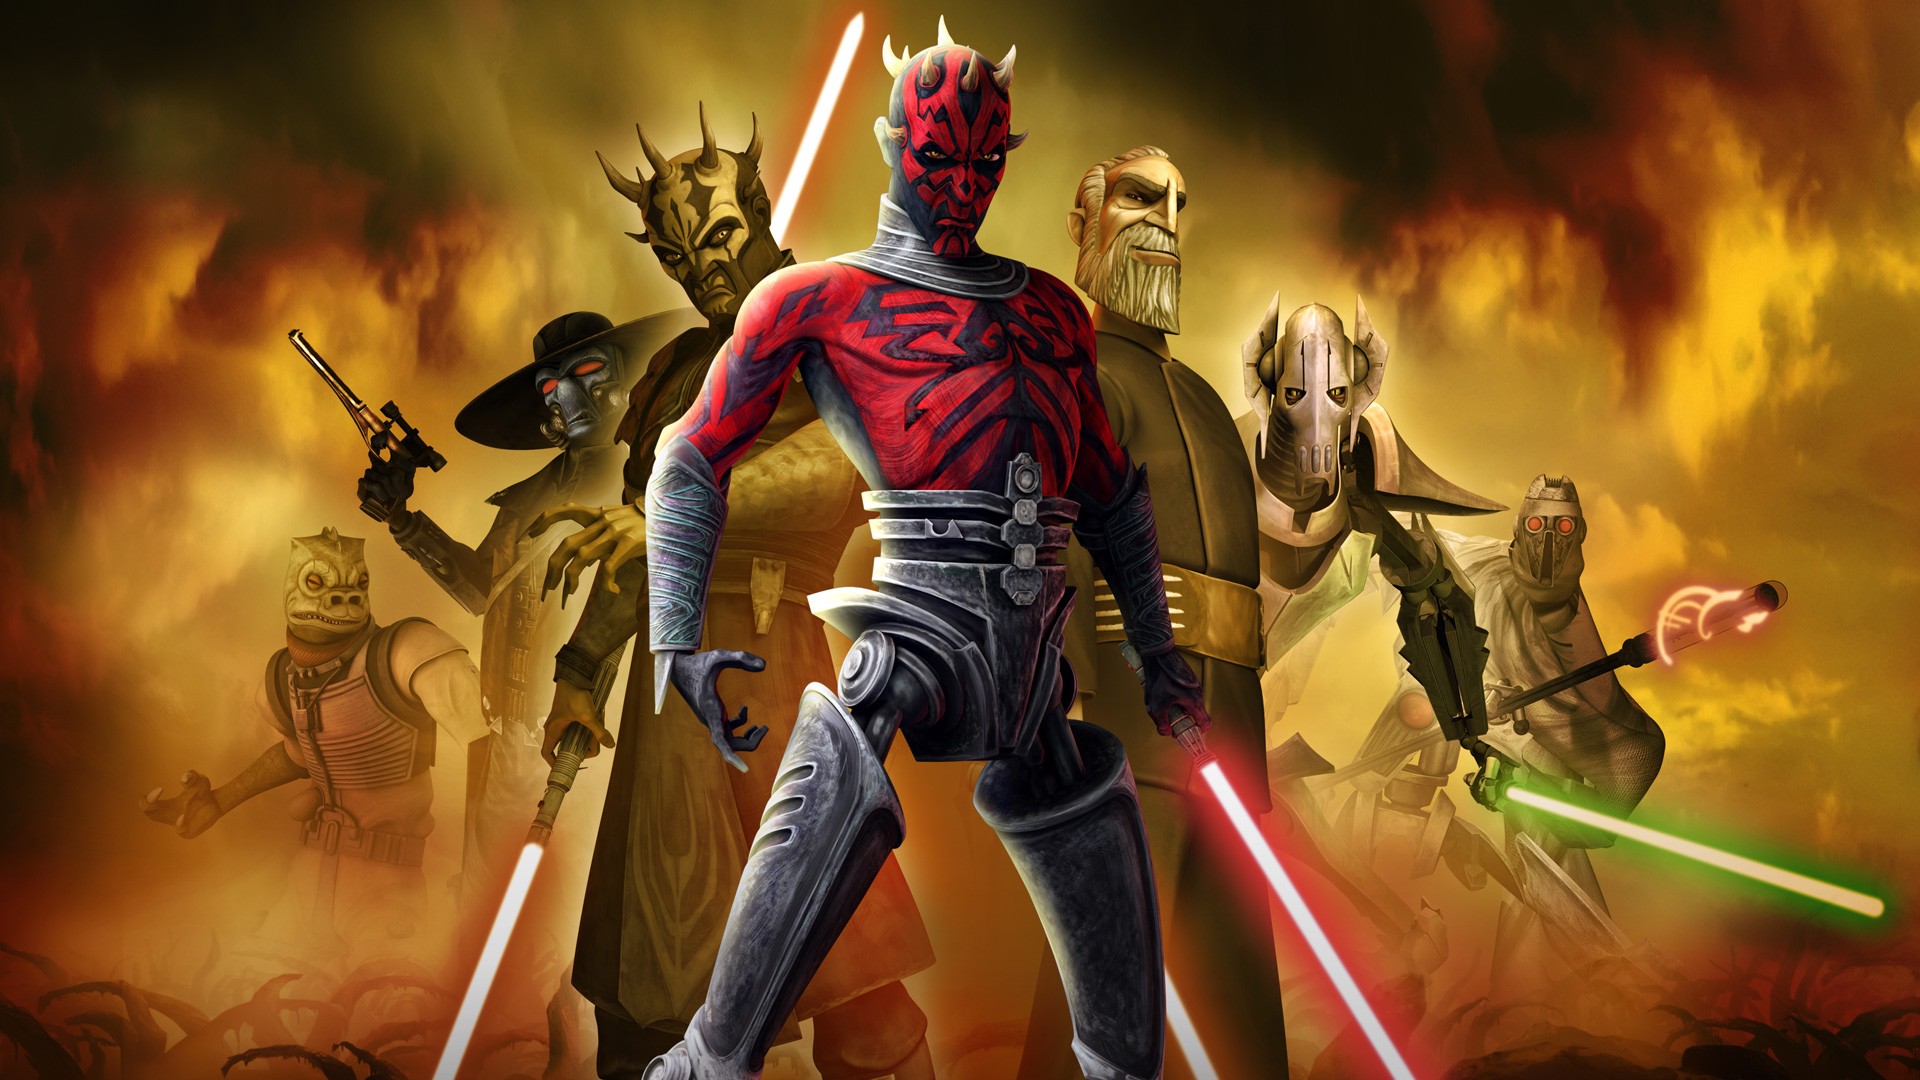 Wallpaper Star Wars: The Clone Wars, cartoon tv series